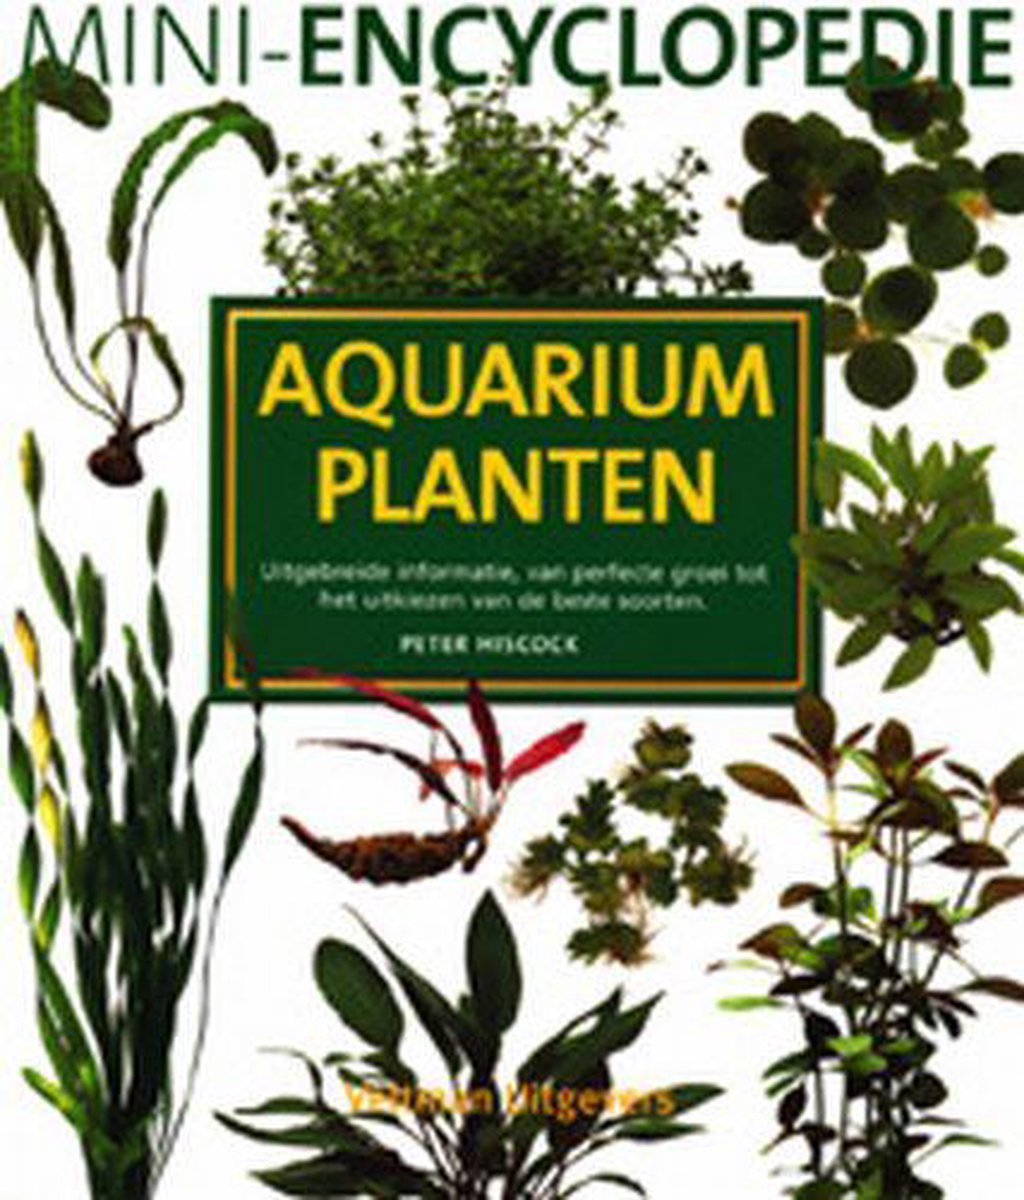 Herhaal Somber Smeltend Mini-encyclopedie aquariumplanten, P. Hiscock | 9789059203662 | Boeken |  bol.com